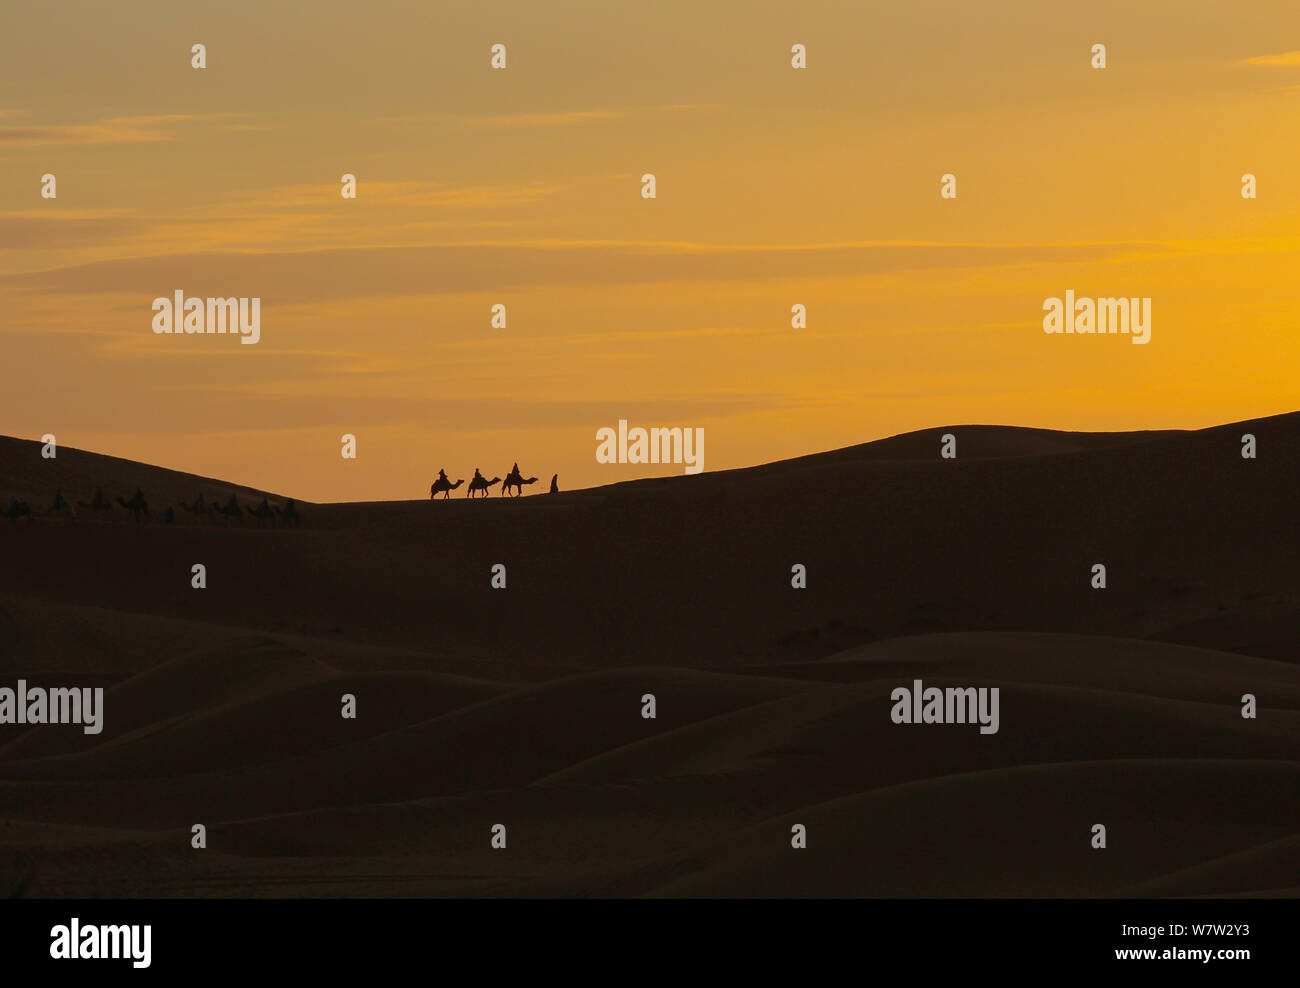 Mit Dromedaren scs sa (Kamele) bei Sonnenuntergang in der von ancien Wüste Sahara Marokko Banque D'Images